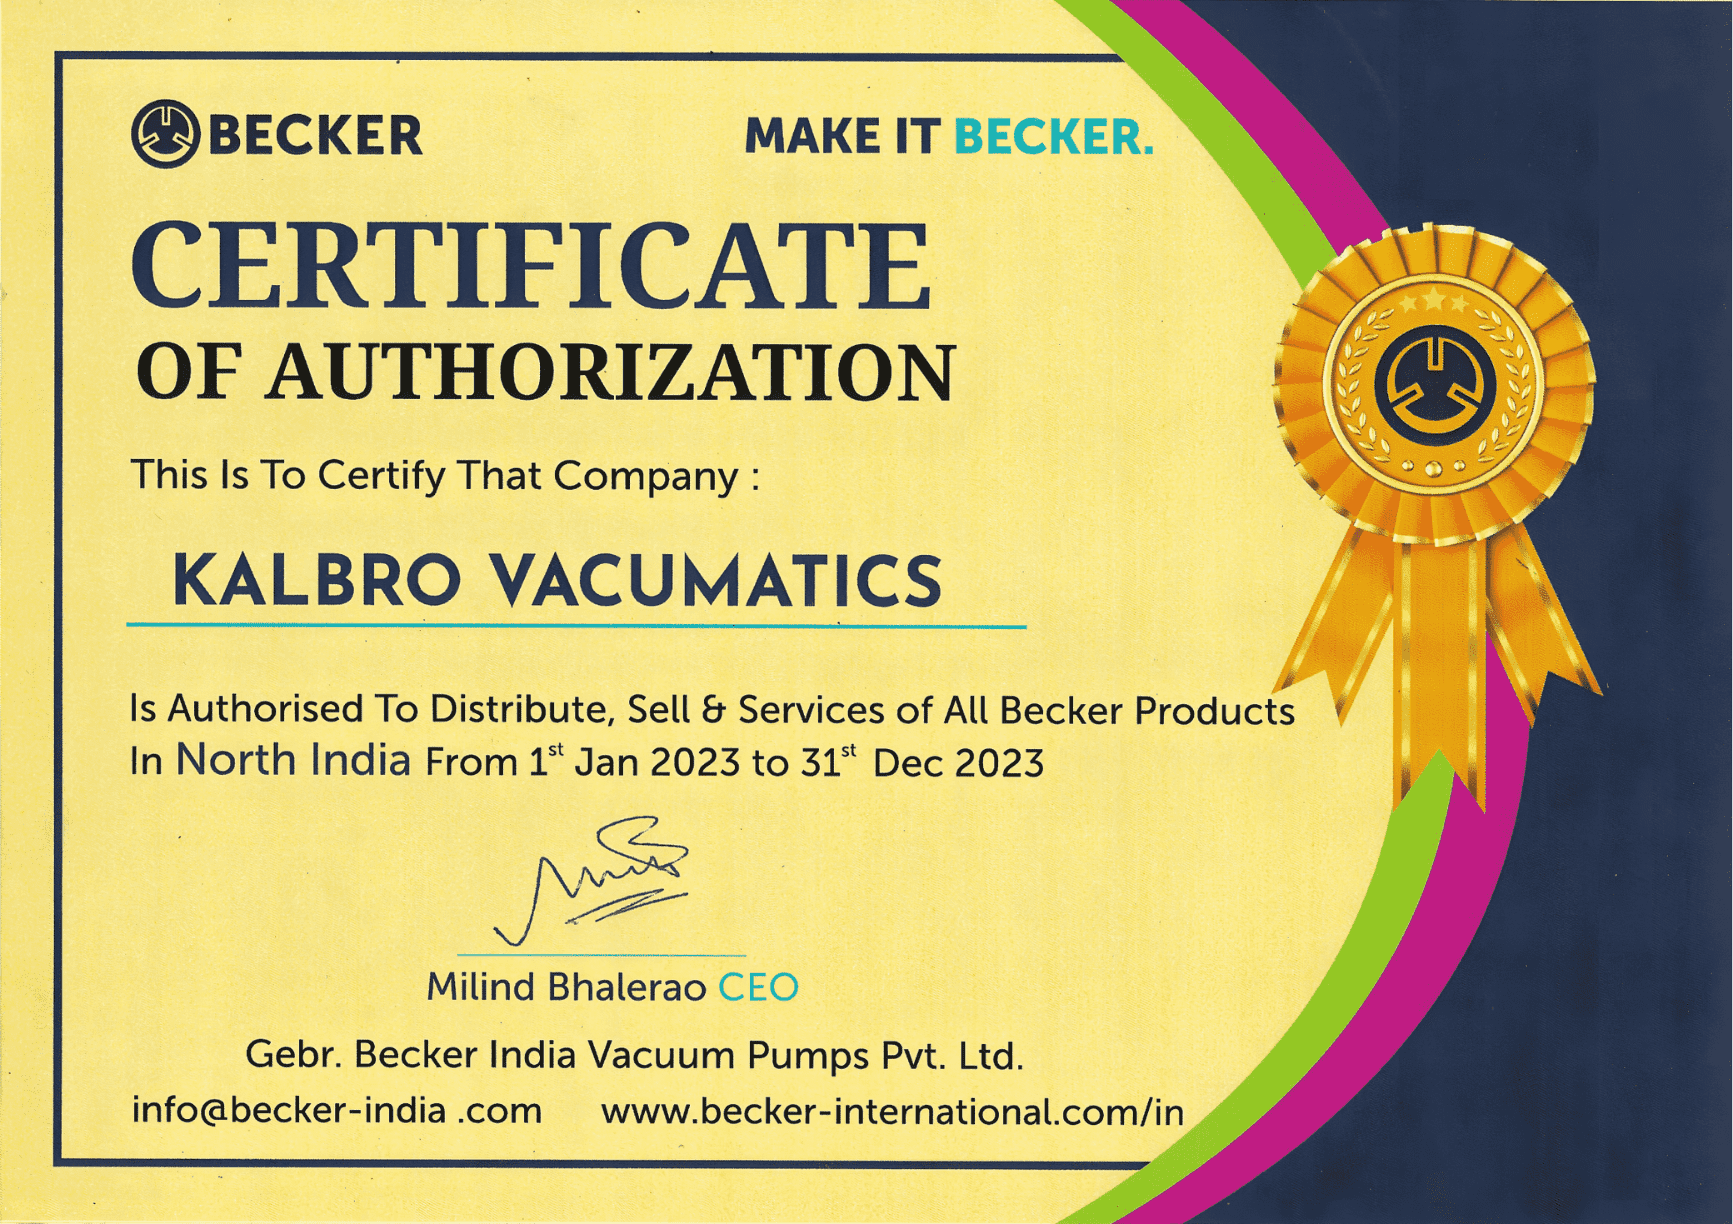 Kalbro Vacumatics certificate by Becker